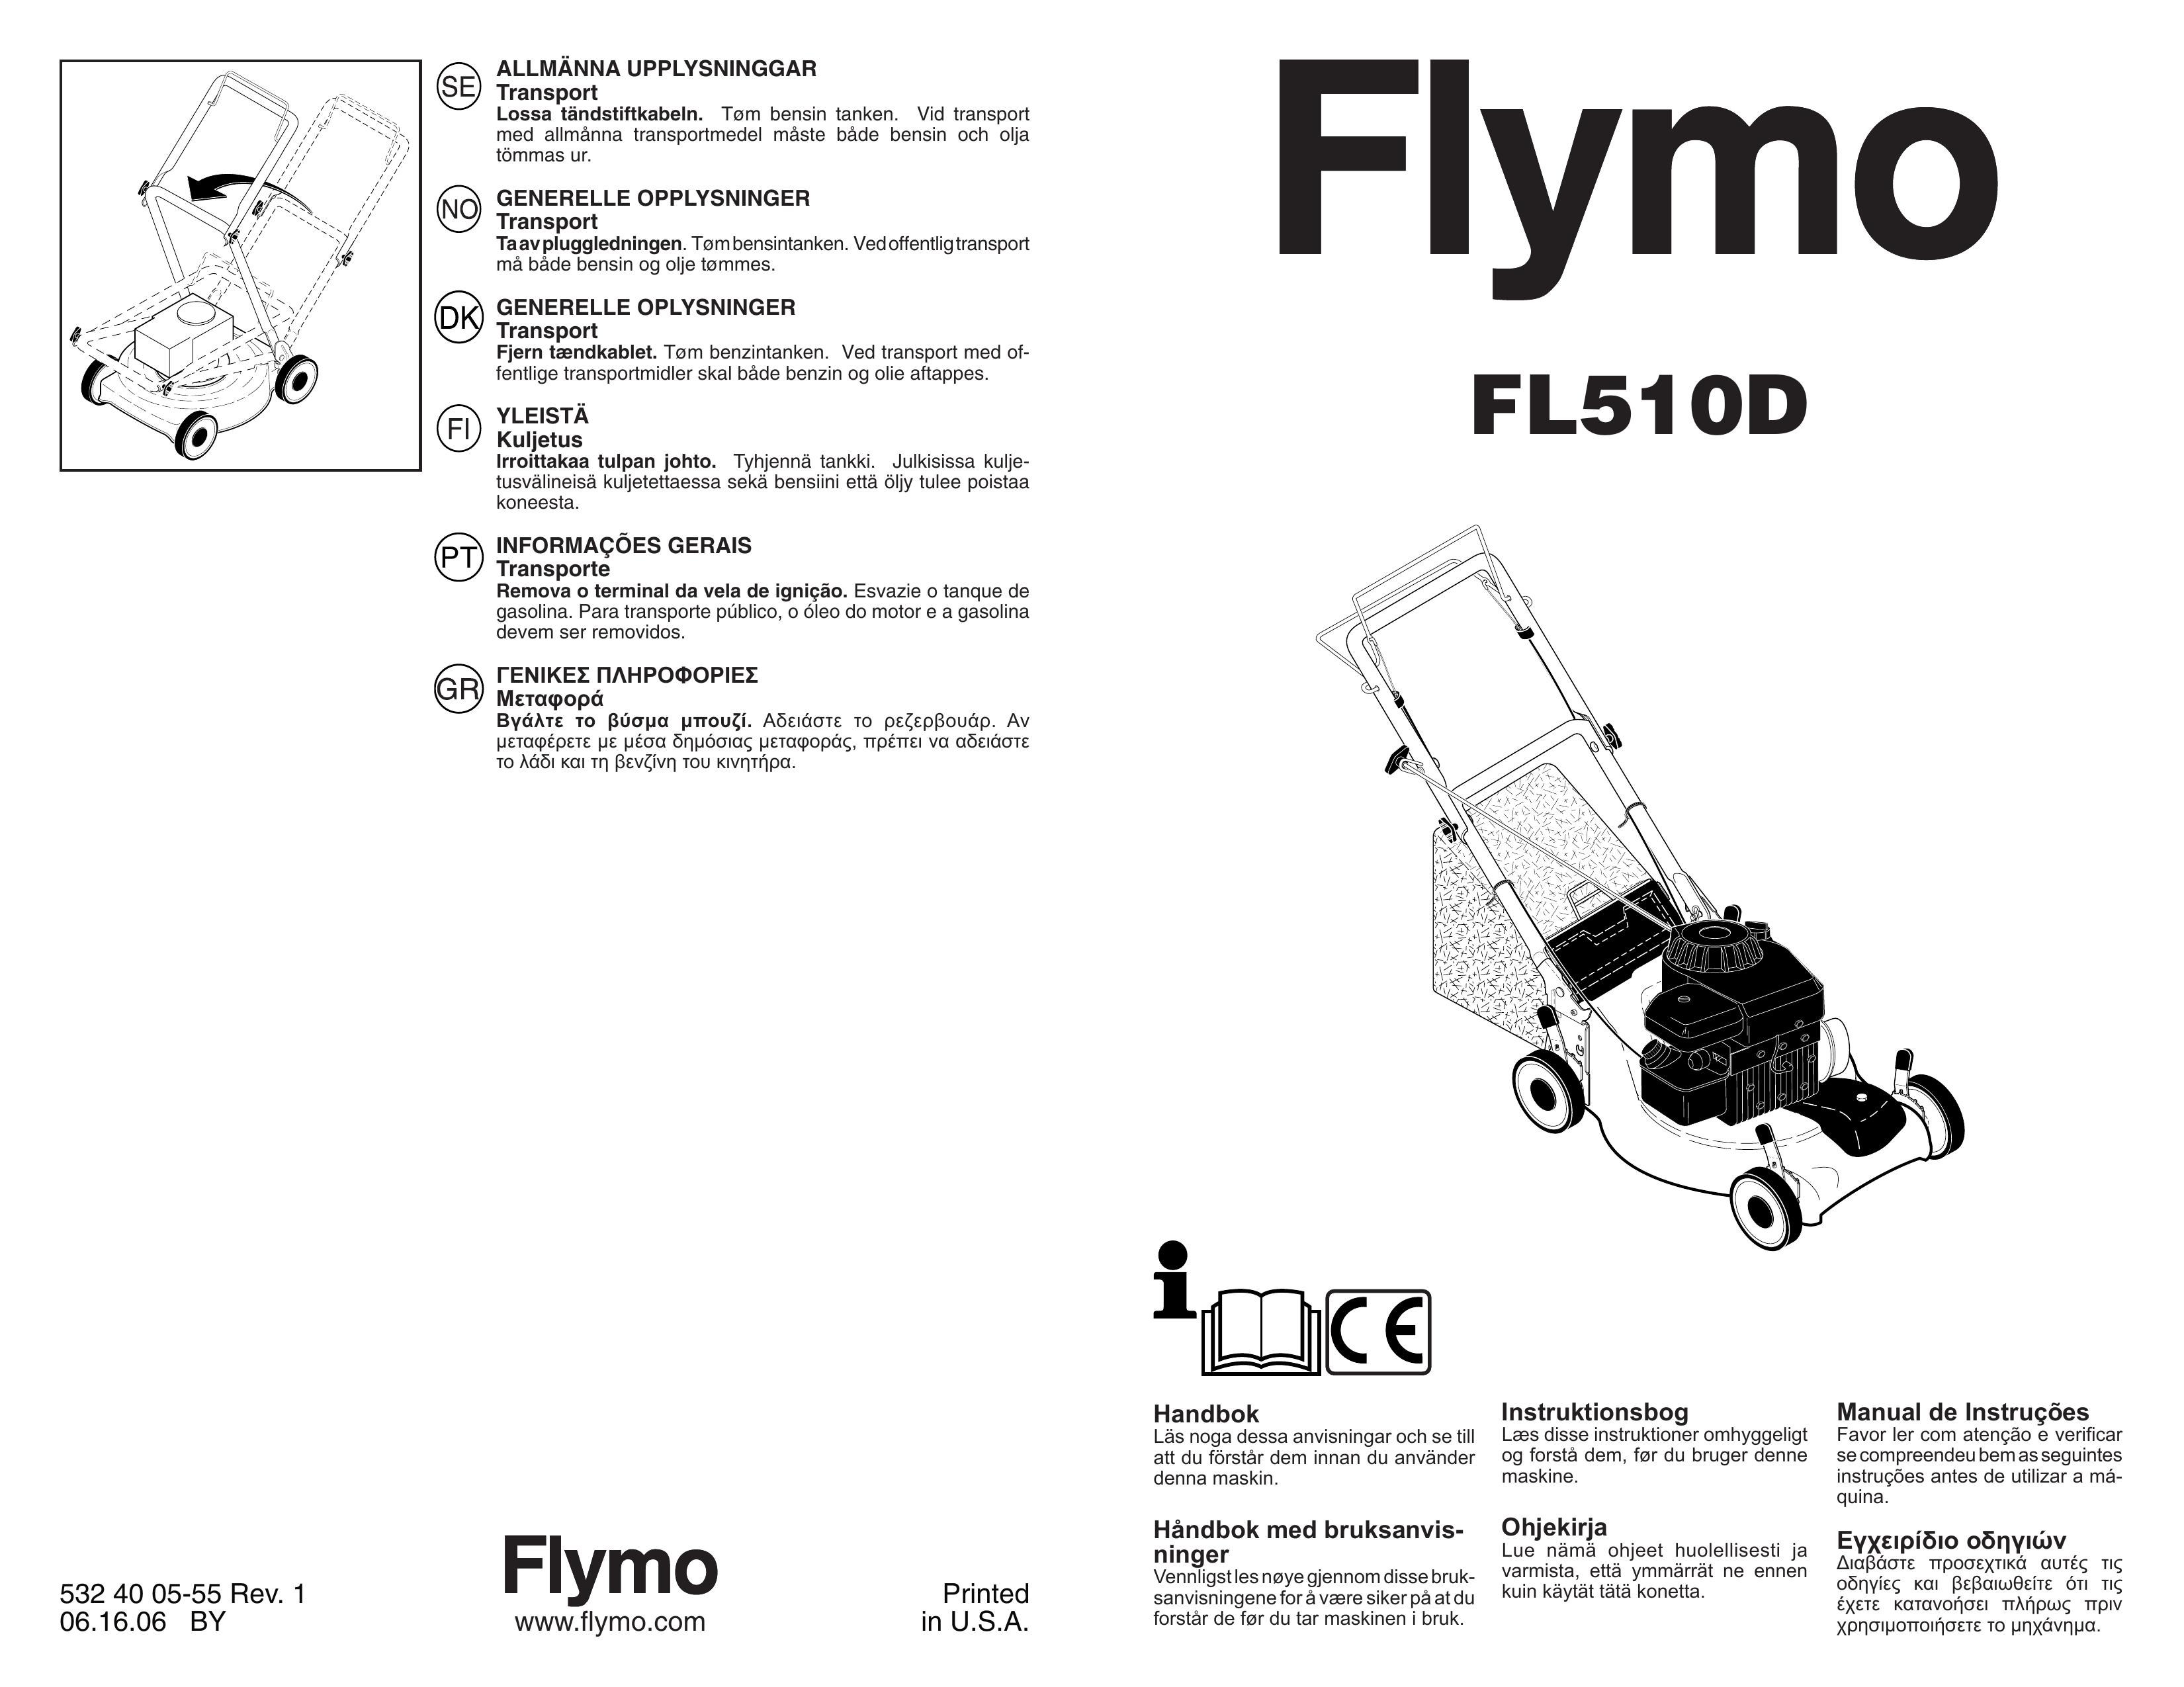 Flymo FL510D Lawn Mower User Manual